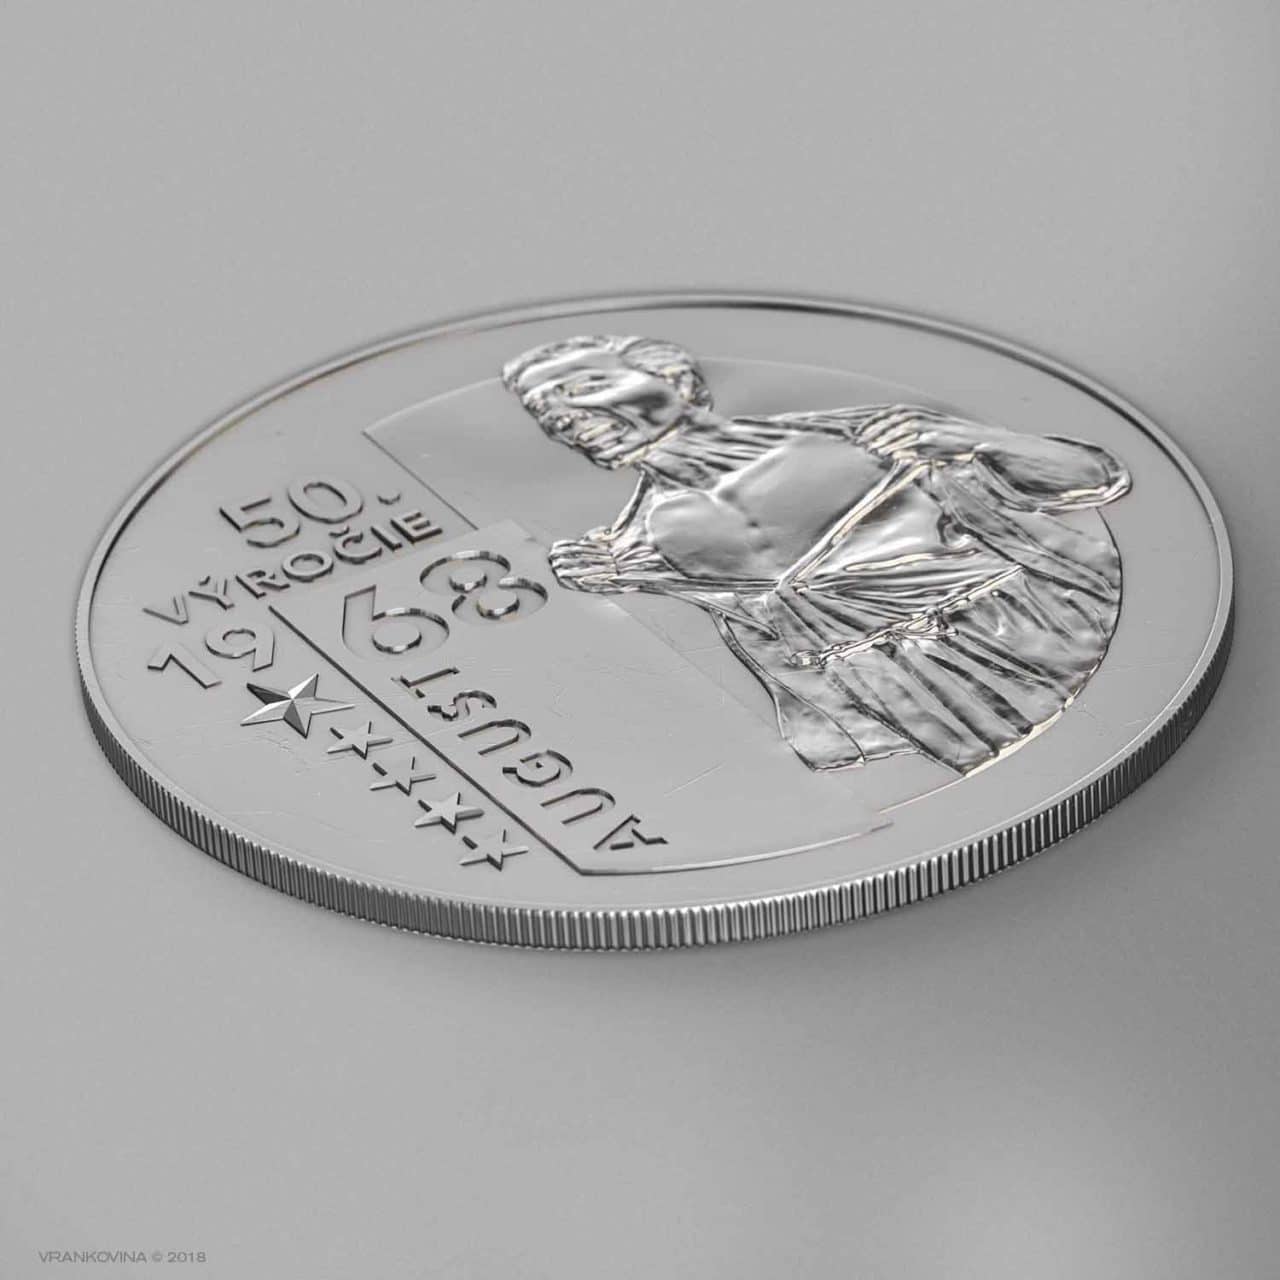 Münze zum 50. Jubiläum des August 1968, Averz